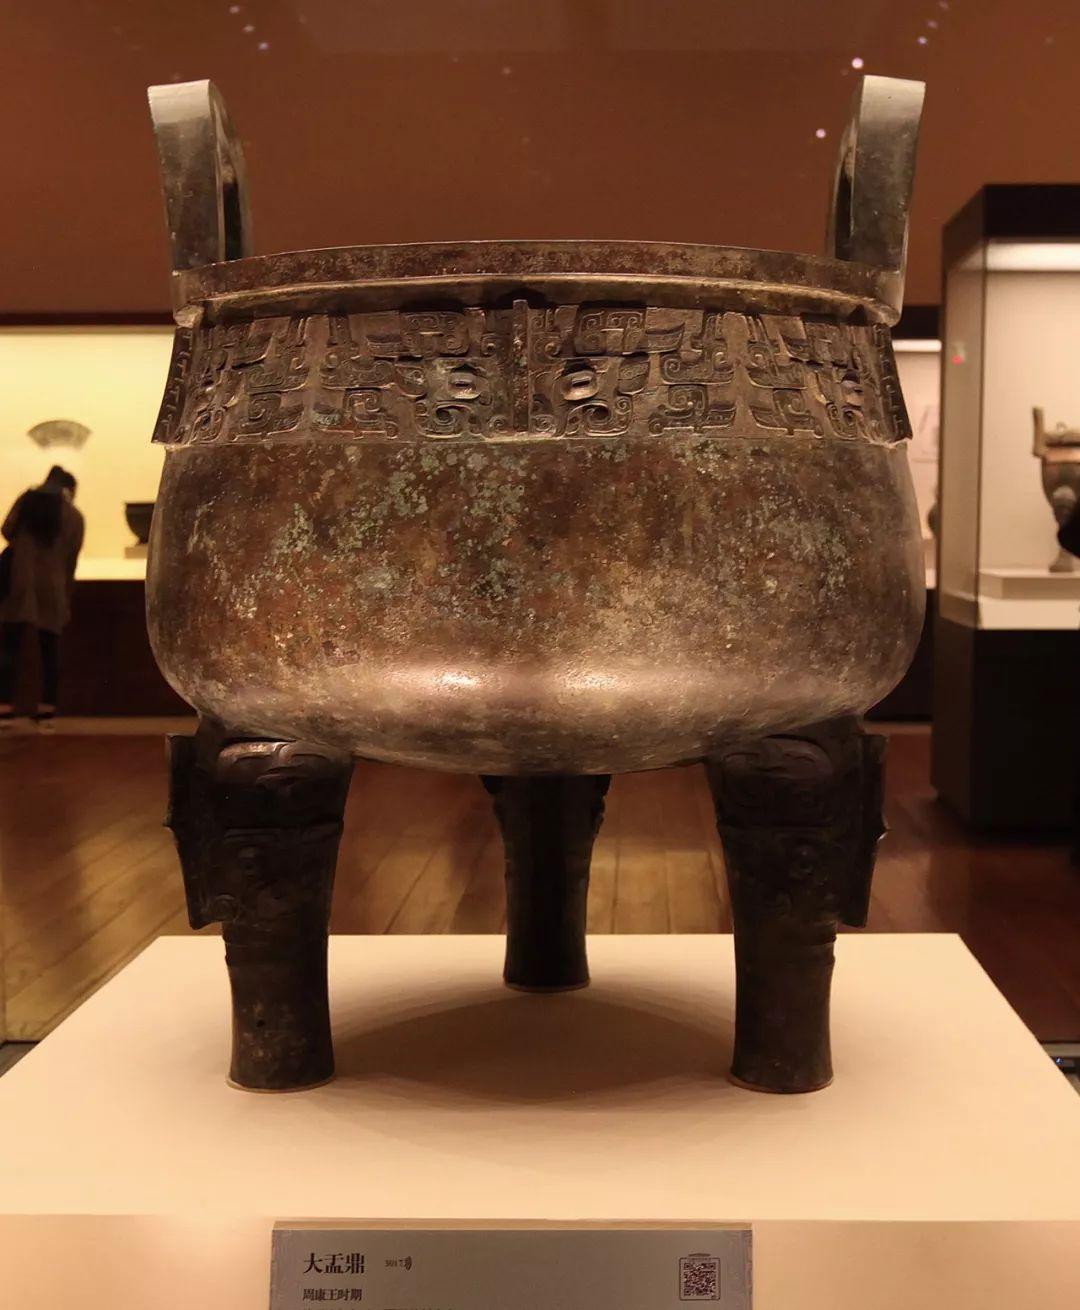 大盂鼎,西周康王时期,中国国家博物馆藏高1019厘米,口径77